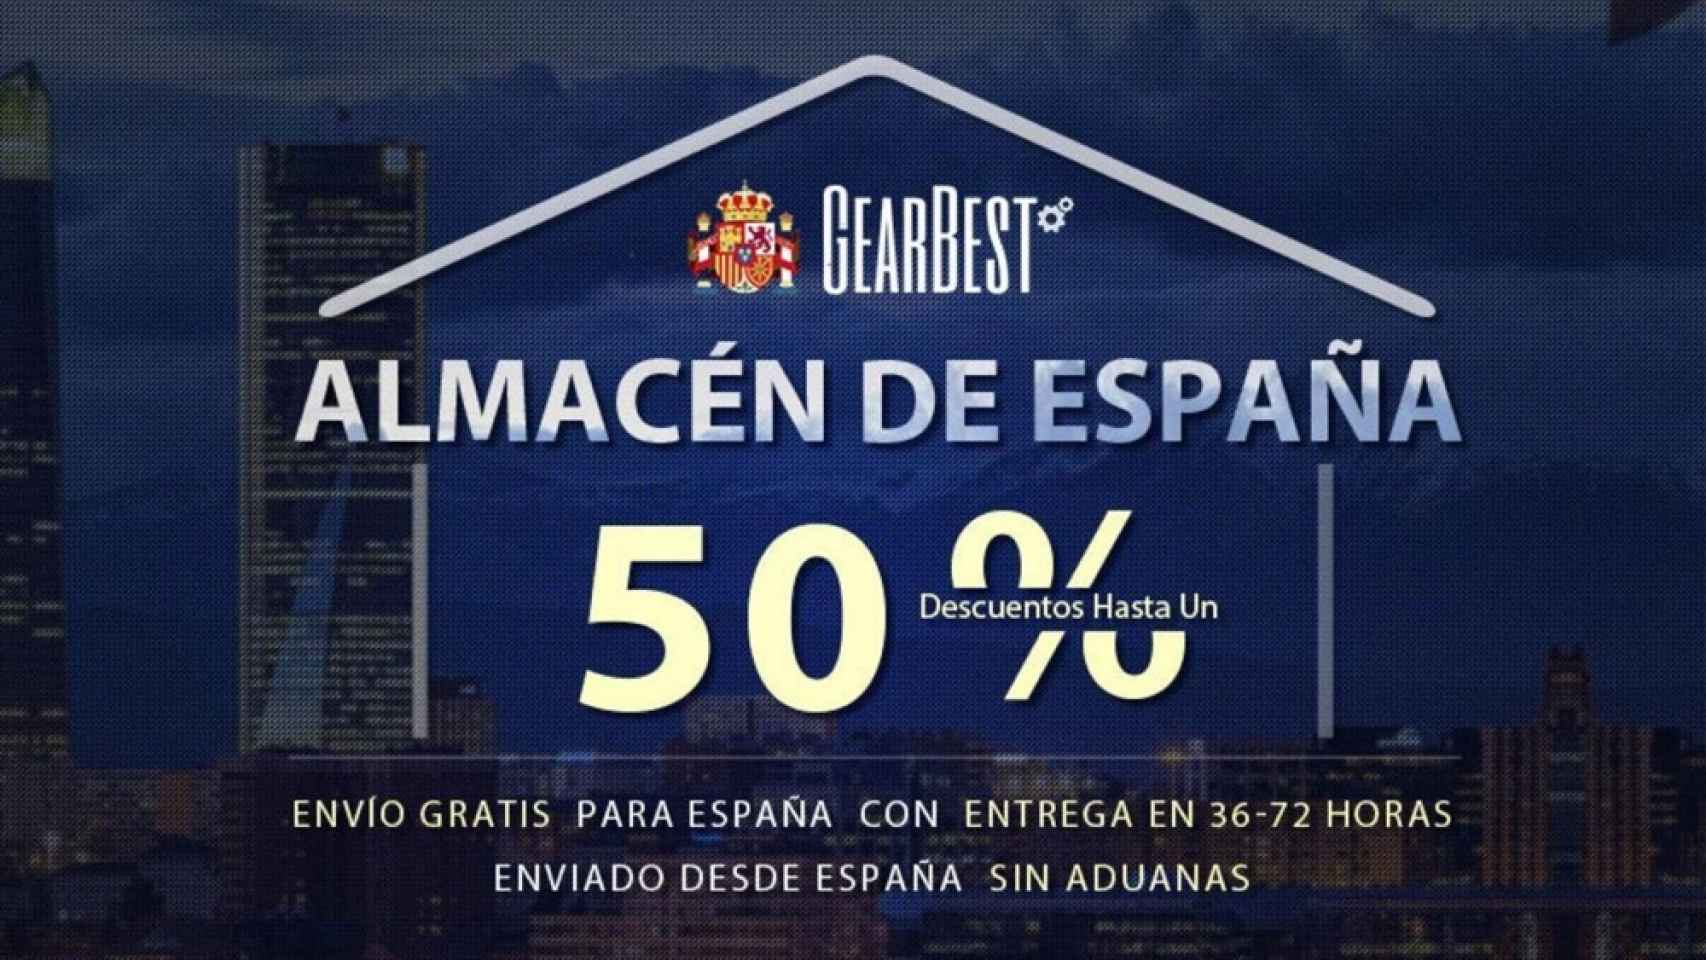 GearBest abre su almacén de España: envíos gratis y sin aduanas